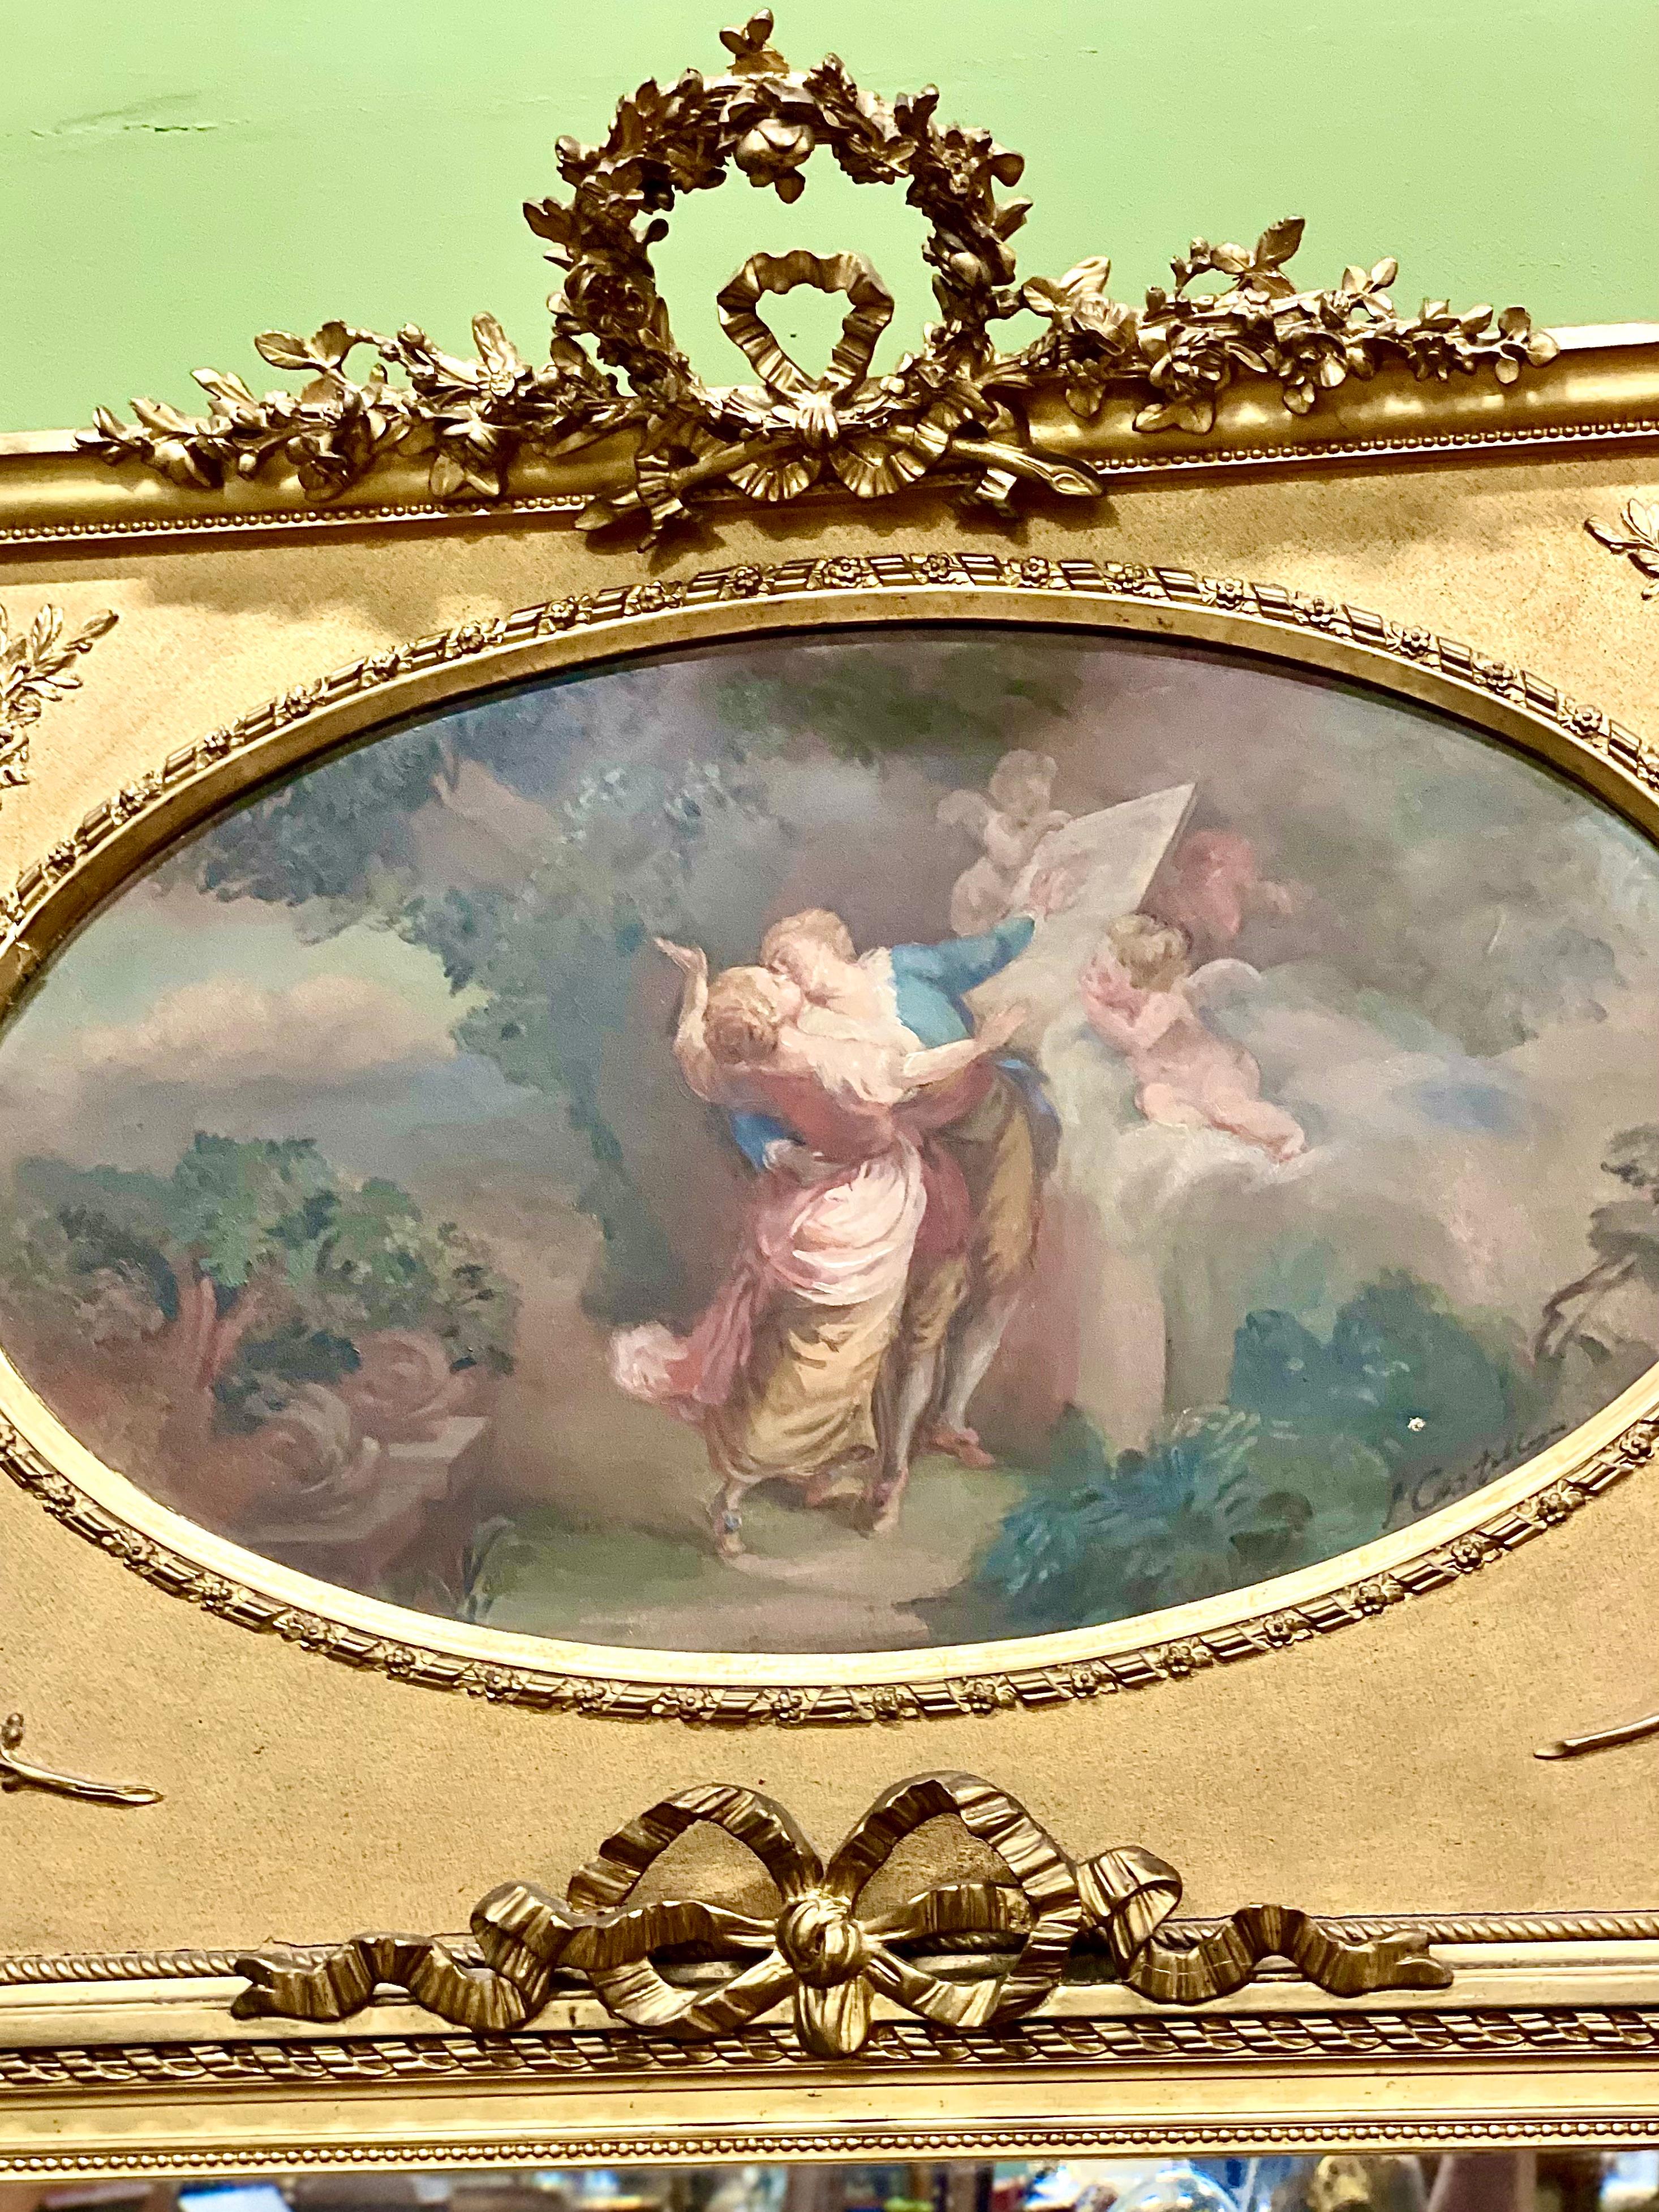 Miroir trumeau français du XIXe siècle, en bois doré. Ce grand et imposant miroir de style Louis XVI et de l'époque Napoléon III devait à l'origine être encastré dans les boiseries ou dans l'espace mural entre deux fenêtres pour amplifier la lumière